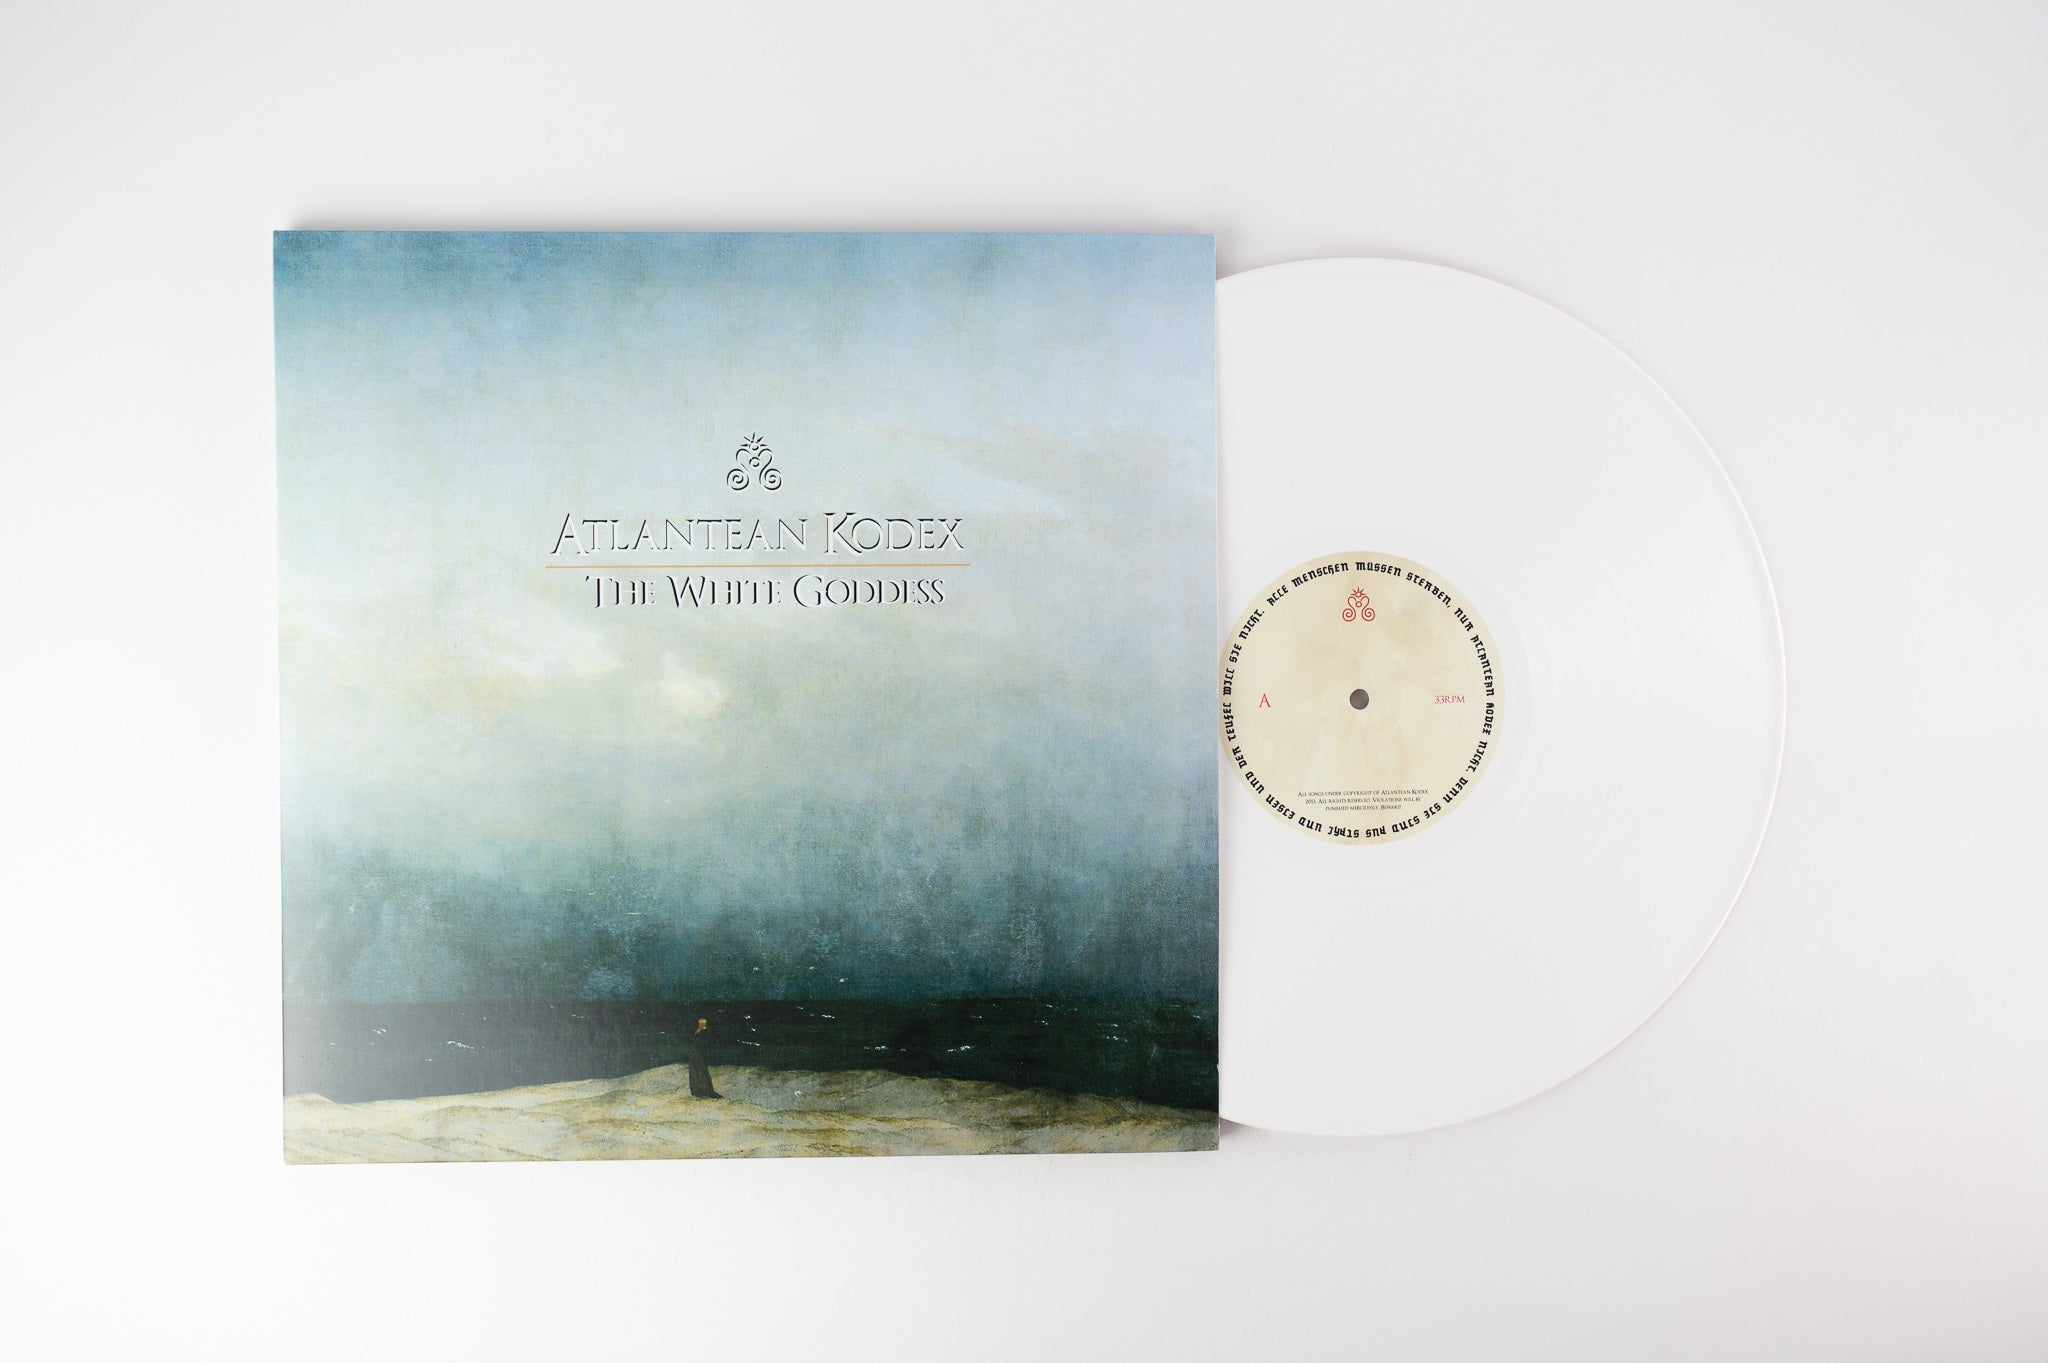 Atlantean Kodex - The White Goddess on 20 Buck Spin Limited White Vinyl